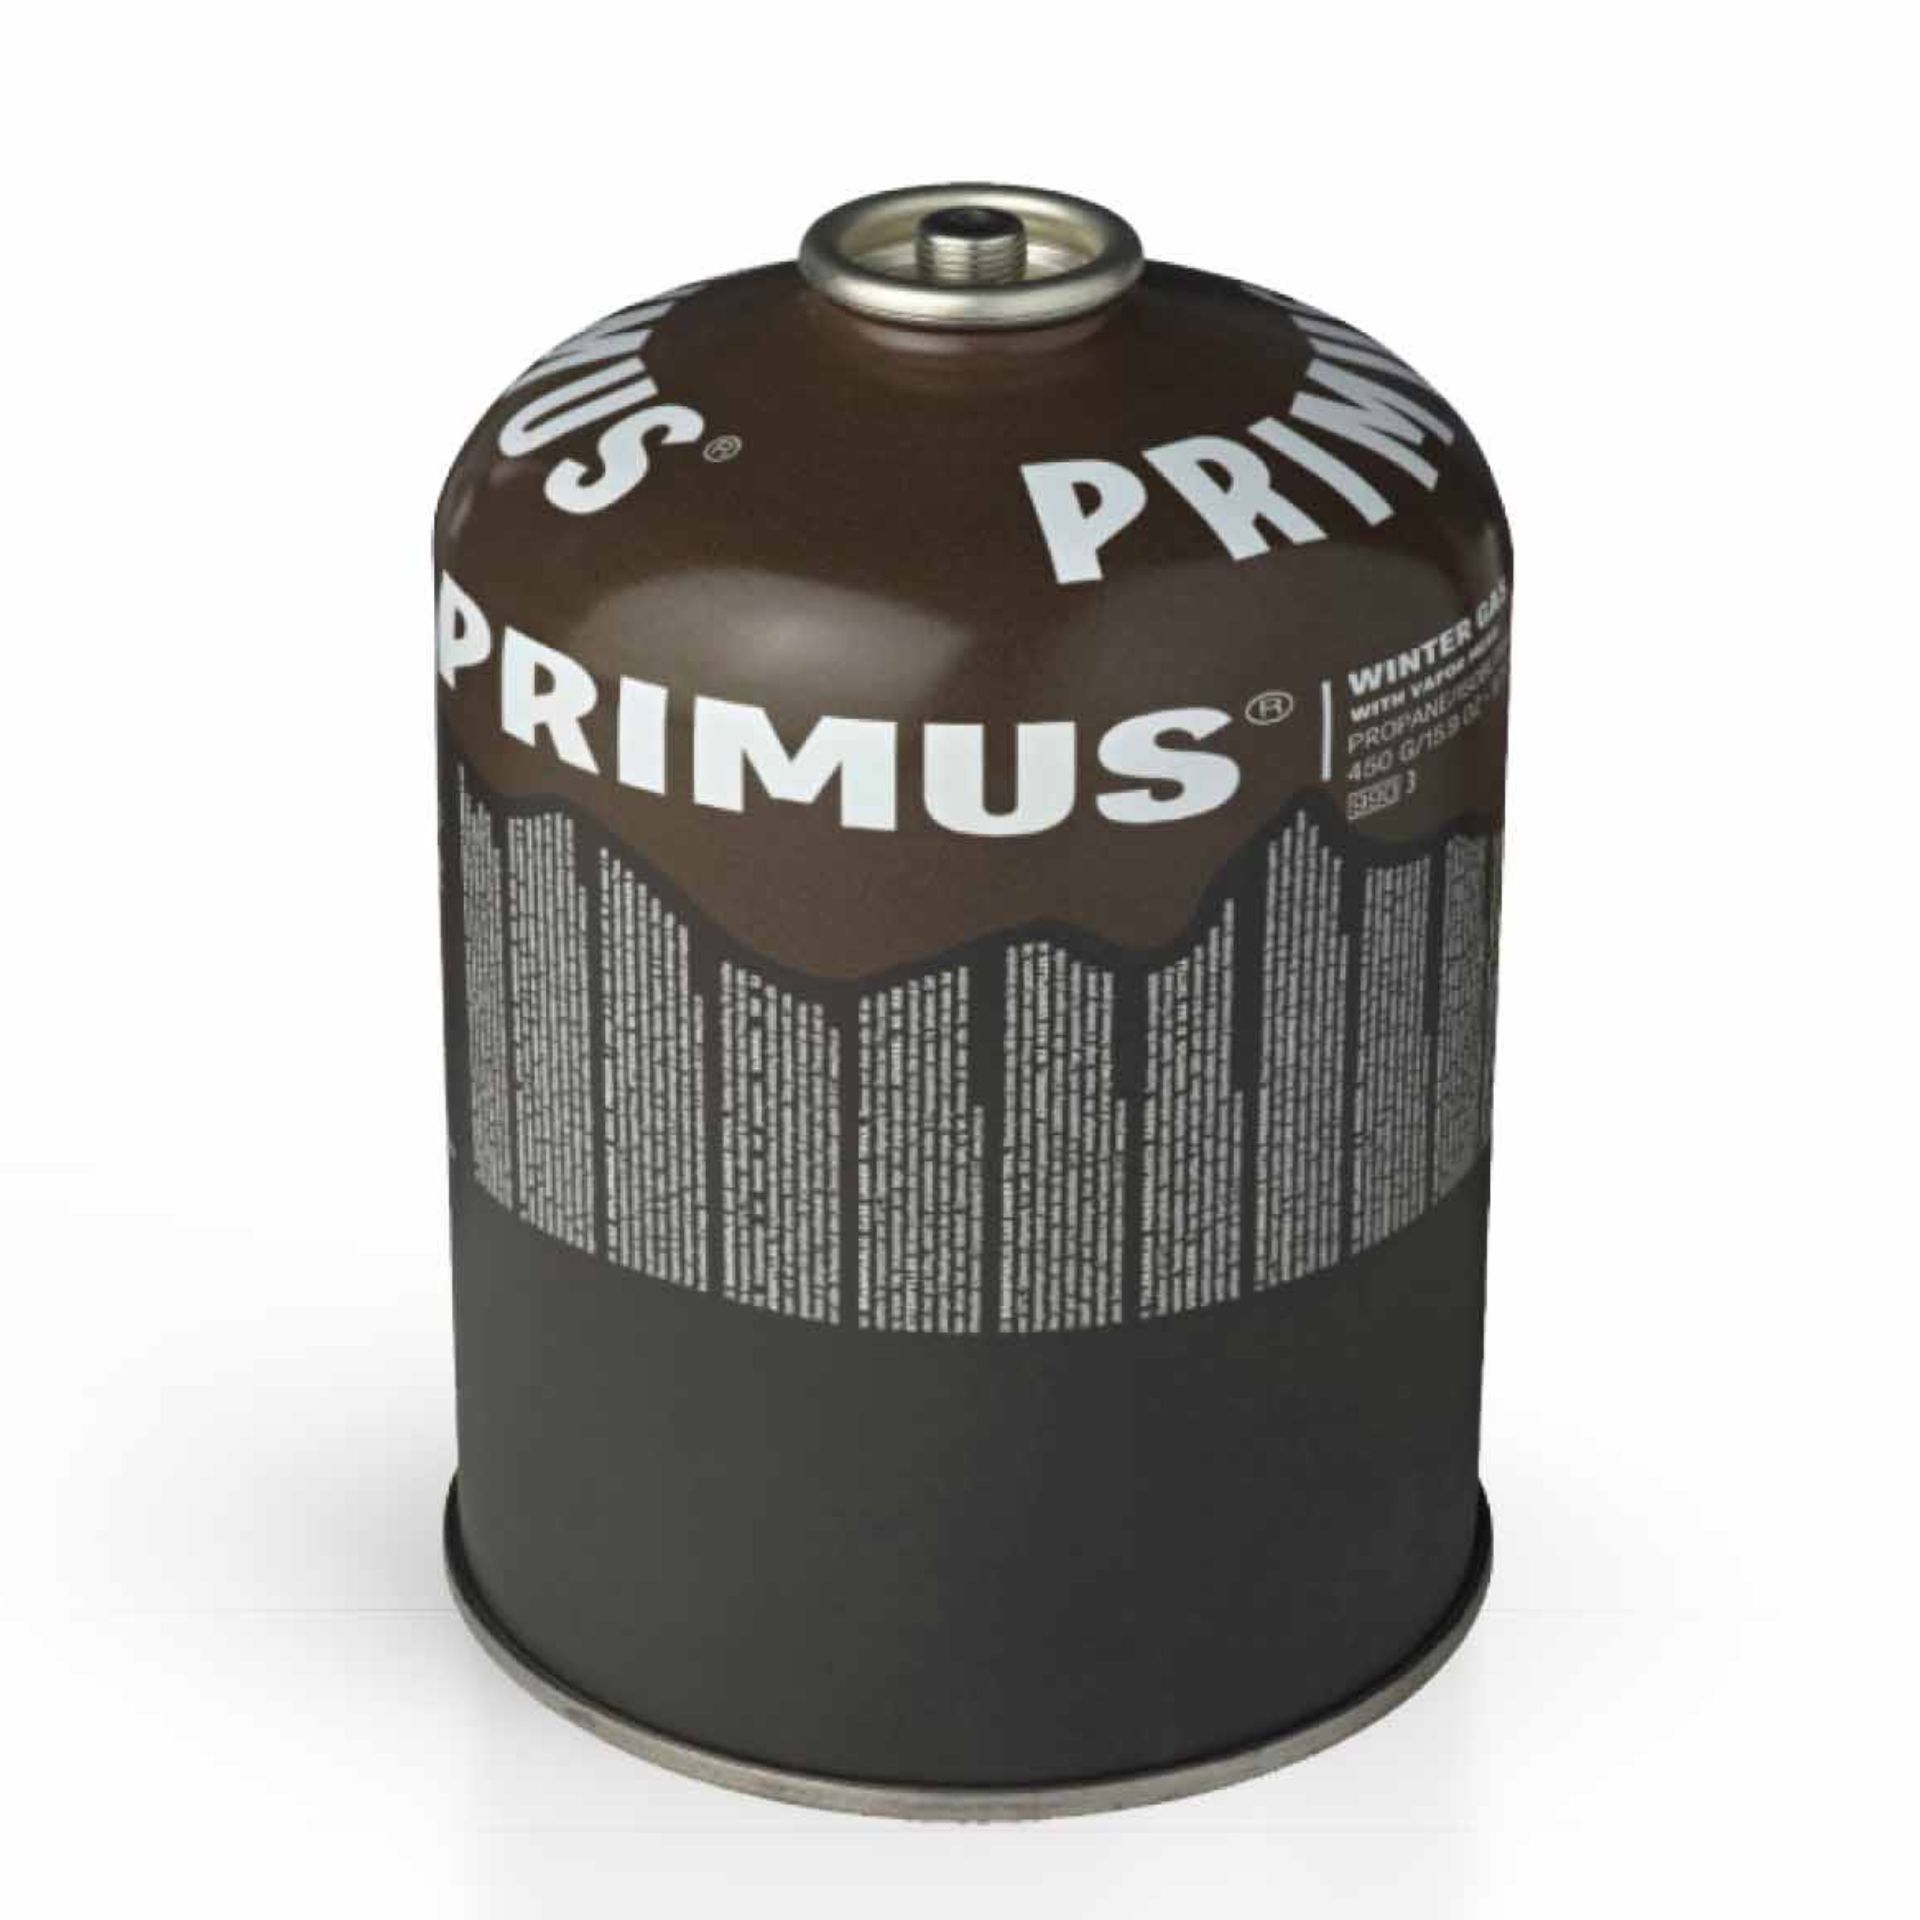 Primus Winter Gas 450 G/Un2037